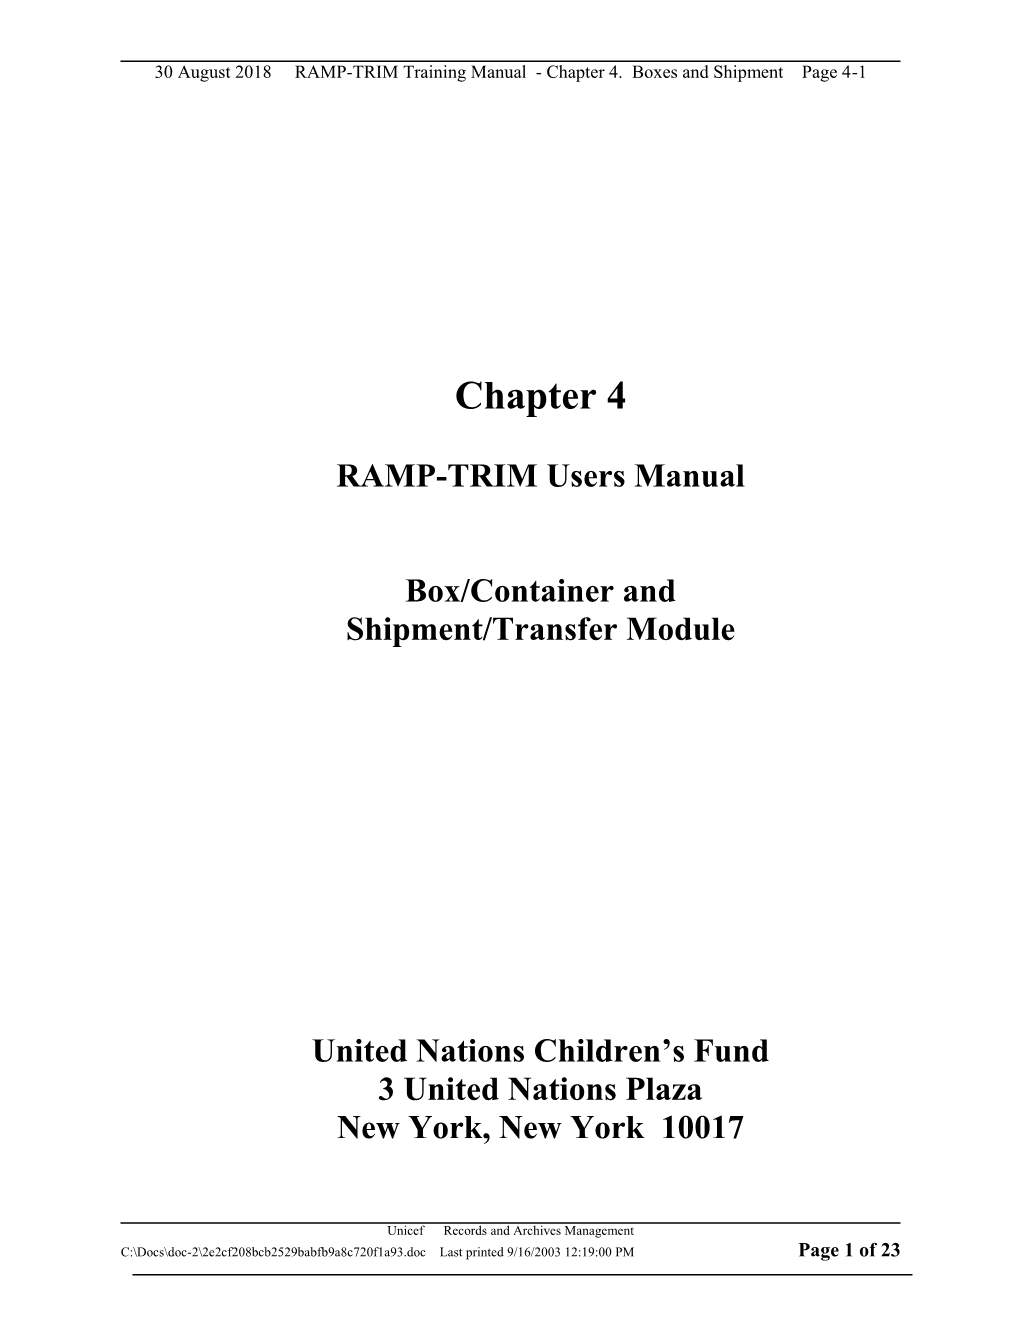 RAMP-TRIM Users Manual